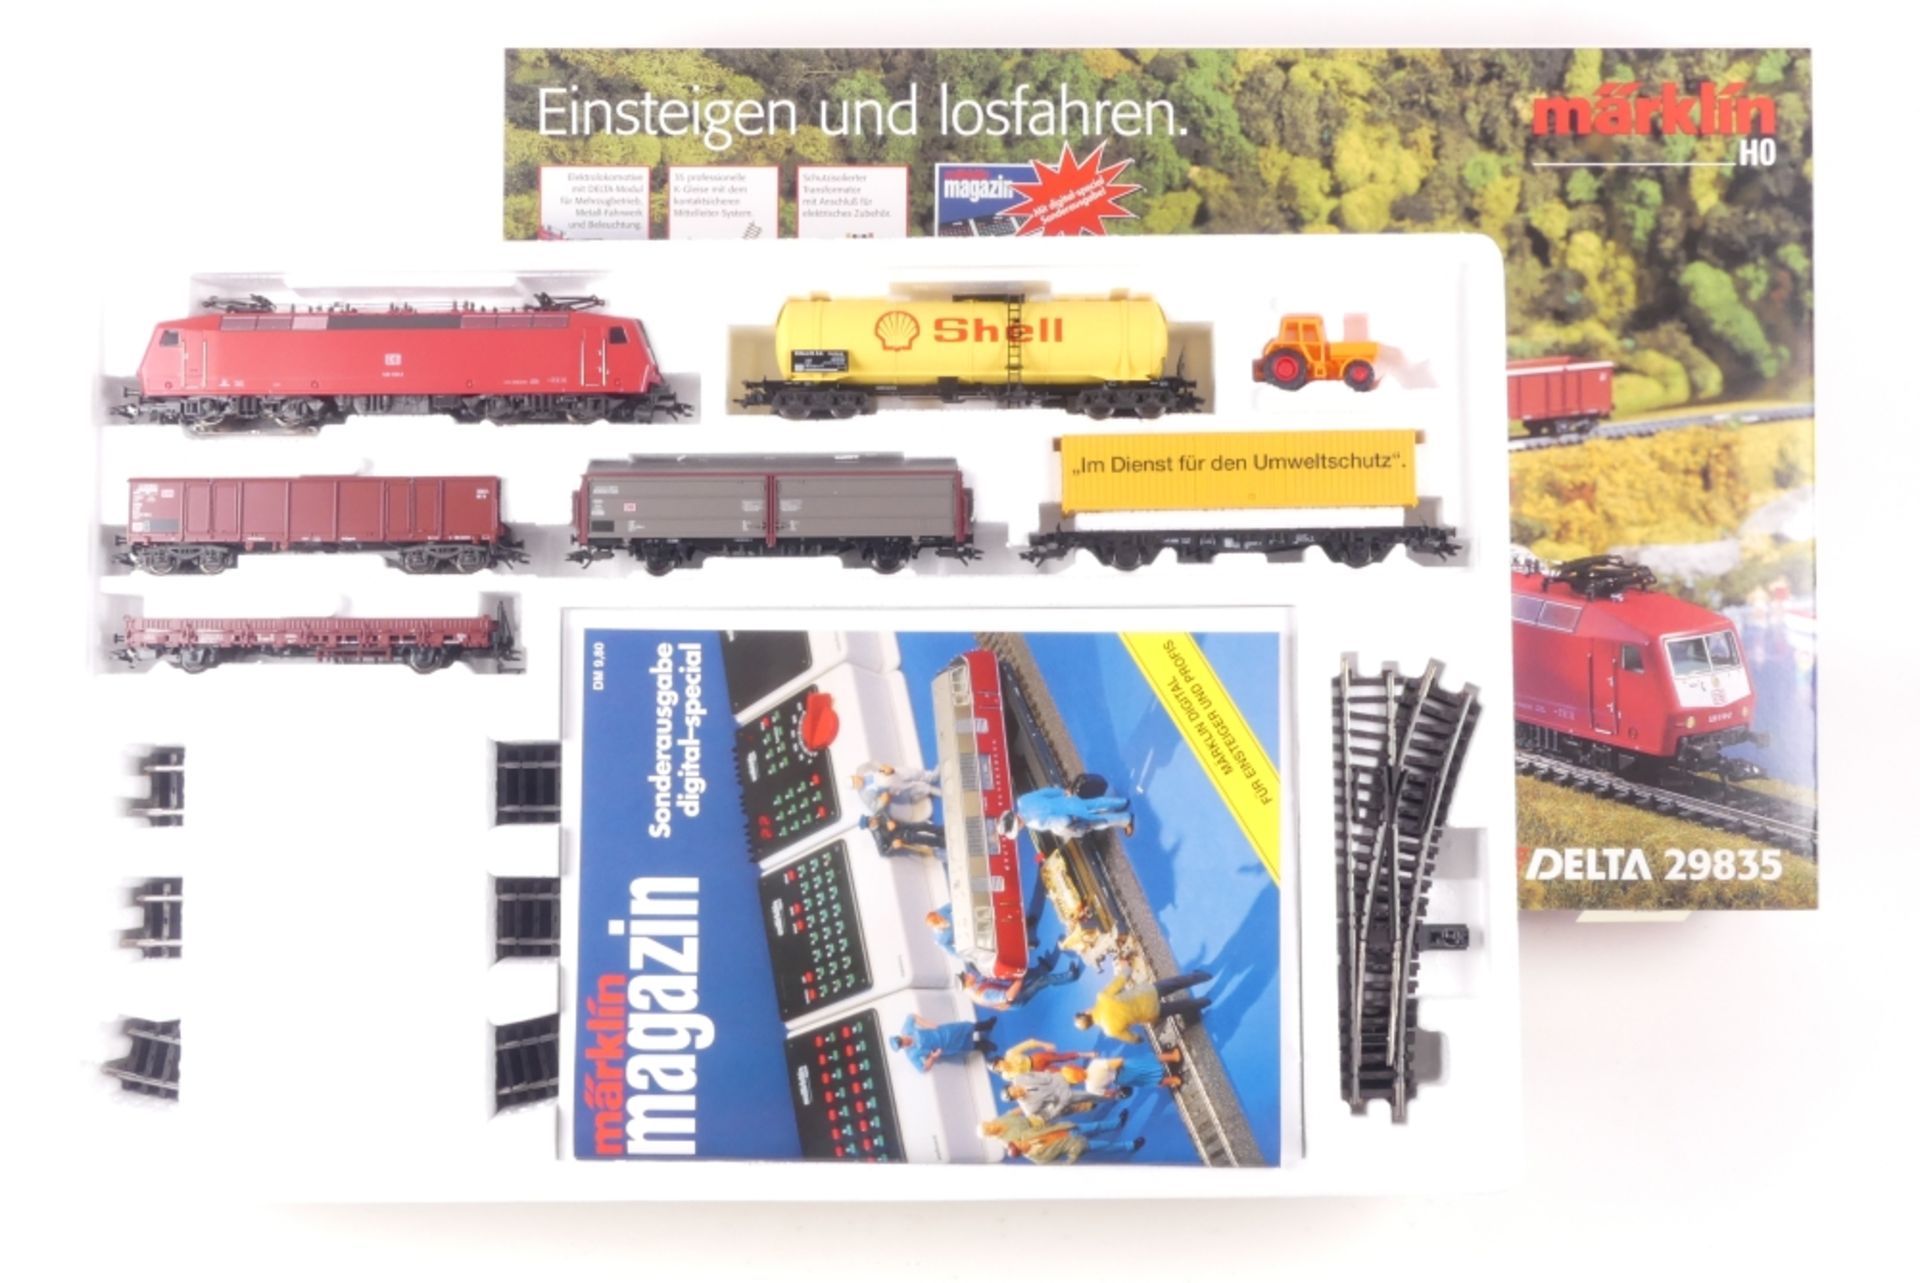 Märklin 29835Märklin 29835, "Einsteigen und Losfahren ...", DELTA Güterzug-Start-Se